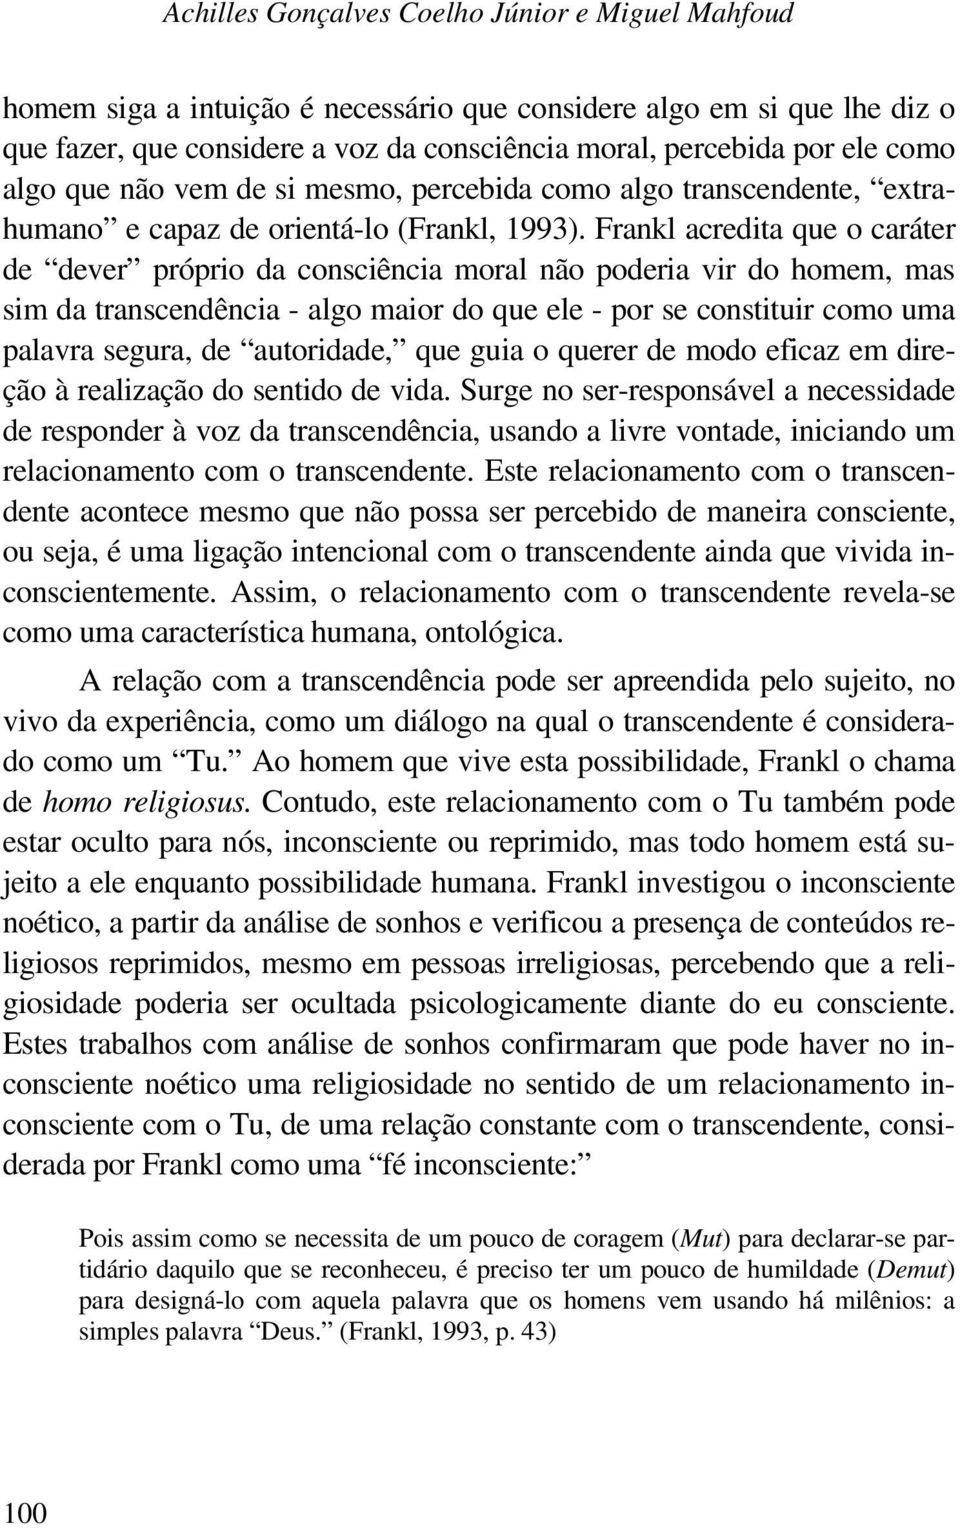 Frankl acredita que o caráter de dever próprio da consciência moral não poderia vir do homem, mas sim da transcendência - algo maior do que ele - por se constituir como uma palavra segura, de